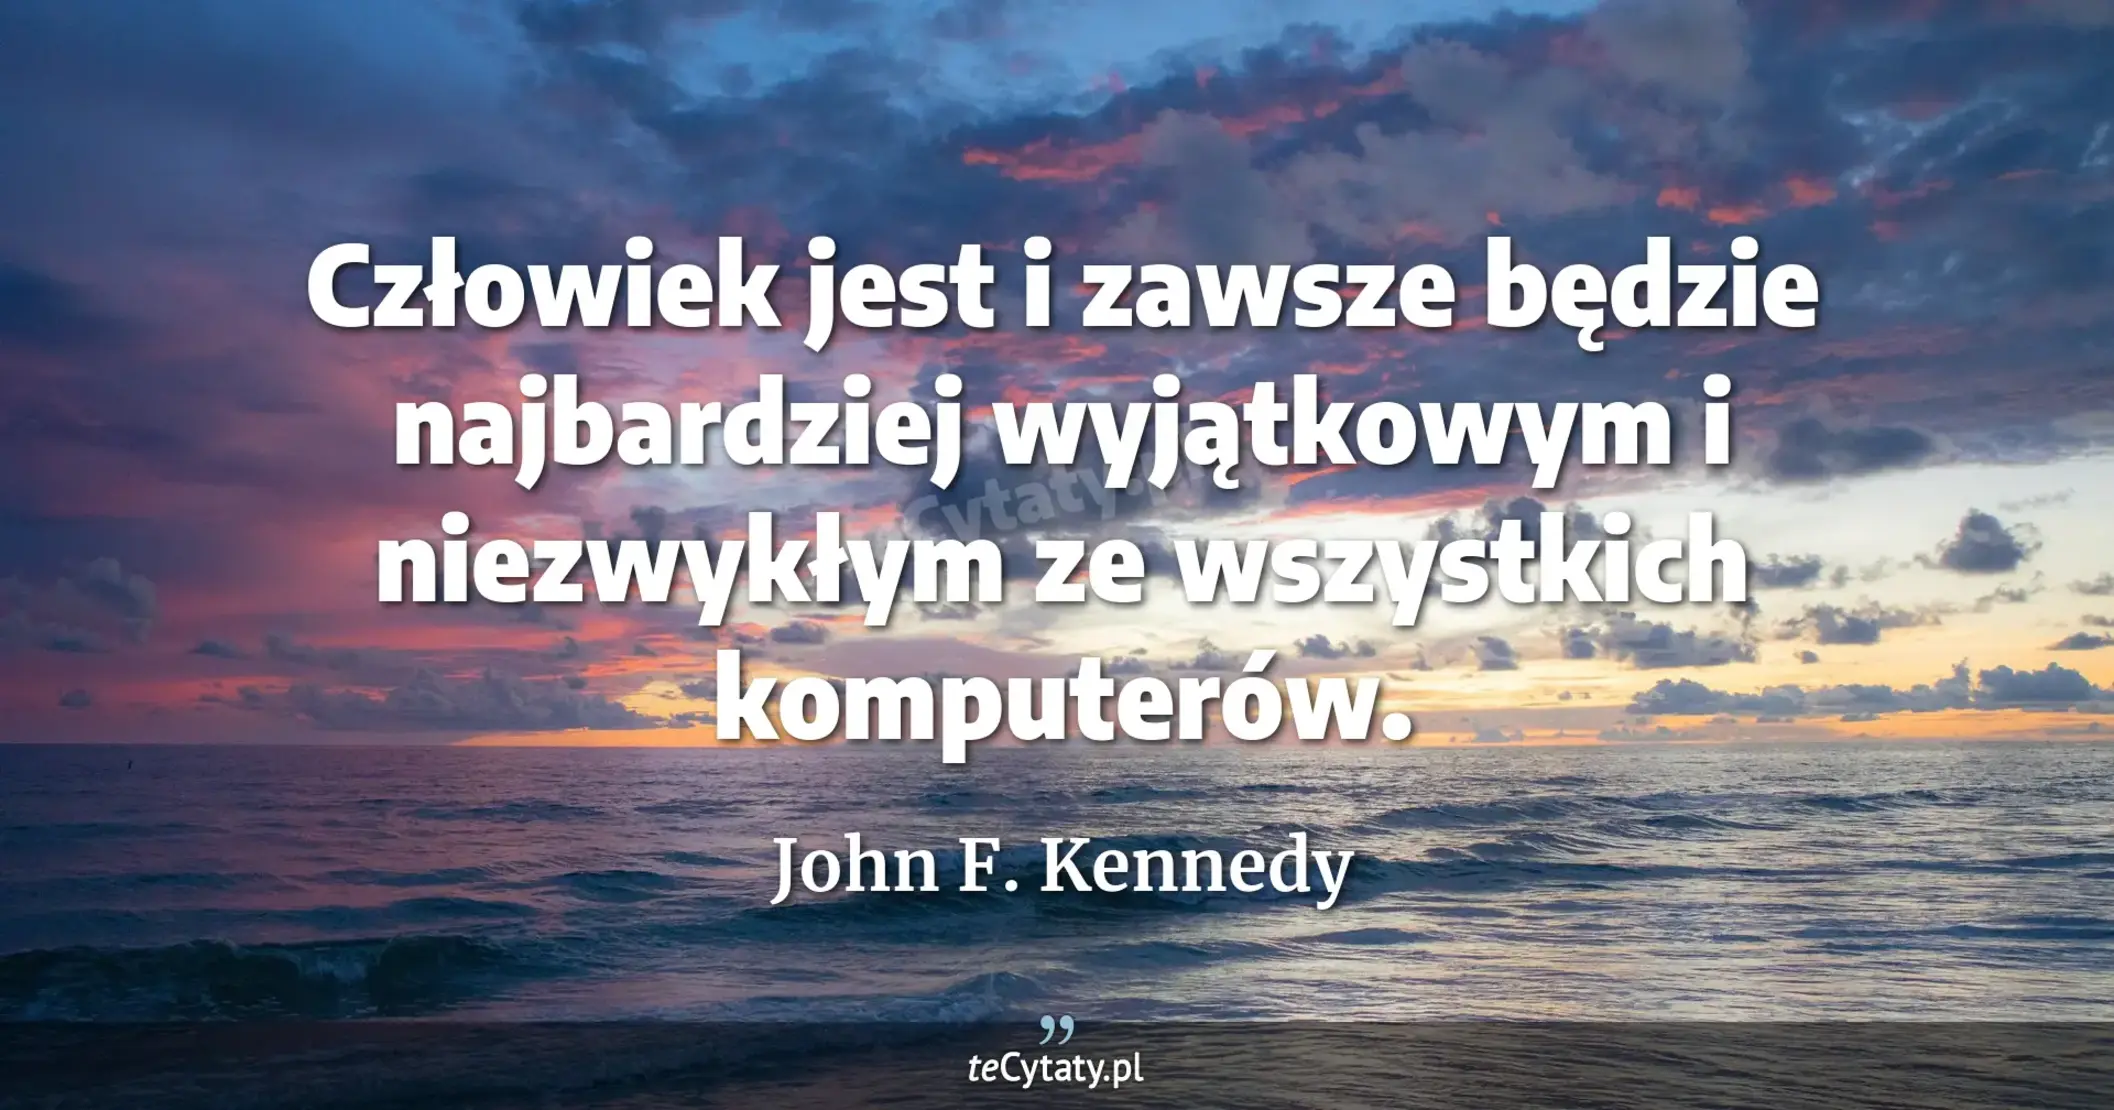 Człowiek jest i zawsze będzie najbardziej wyjątkowym i niezwykłym ze wszystkich komputerów. - John F. Kennedy